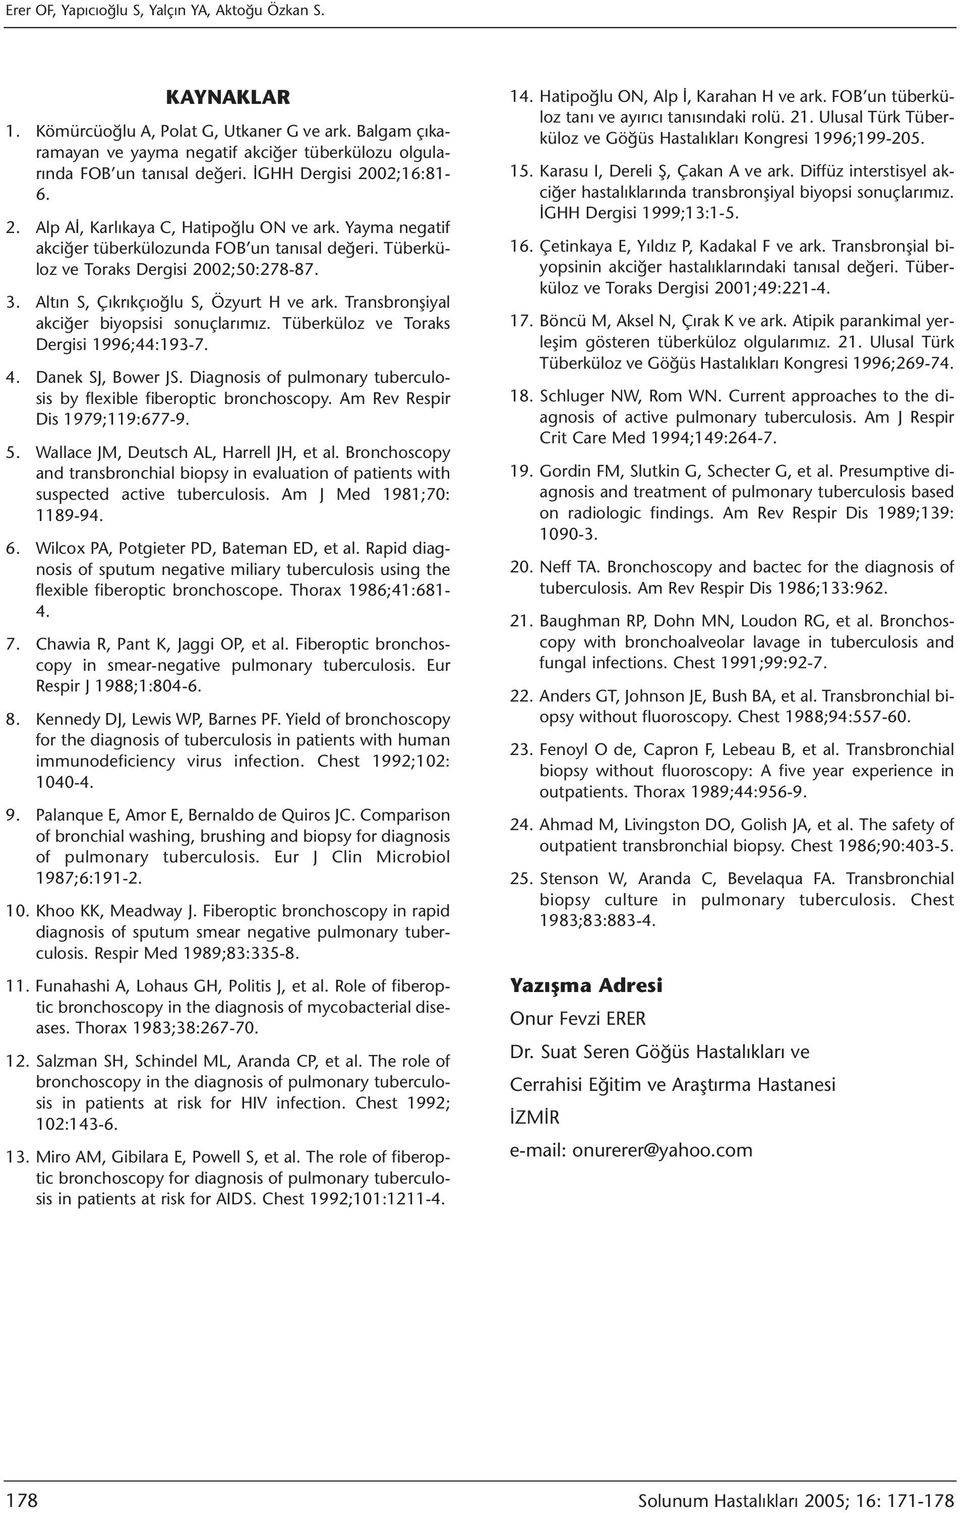 Altın S, Çıkrıkçıoğlu S, Özyurt H ve ark. Transbronşiyal akciğer biyopsisi sonuçlarımız. Tüberküloz ve Toraks Dergisi 1996;44:193-7. 4. Danek SJ, Bower JS.